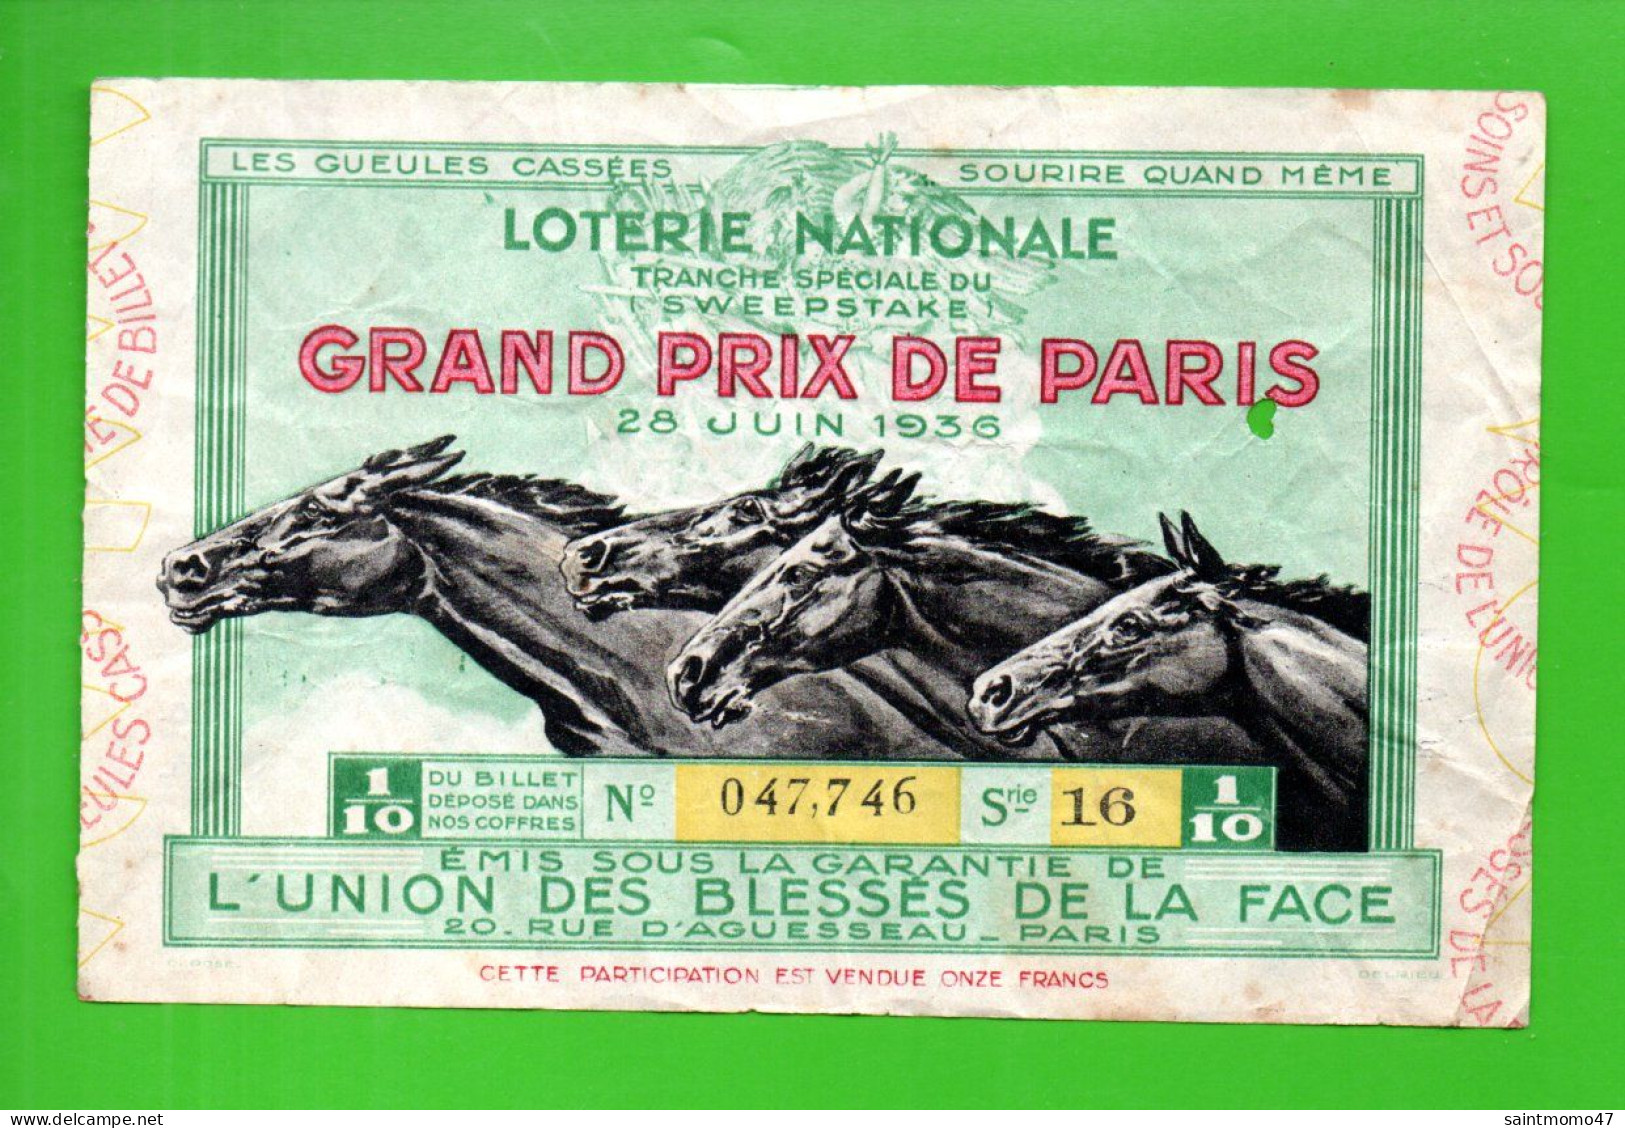 FRANCE . LOTERIE NATIONALE . " GRAND PRIX DE PARIS 1936 " - Ref. N°13027 - - Biglietti Della Lotteria